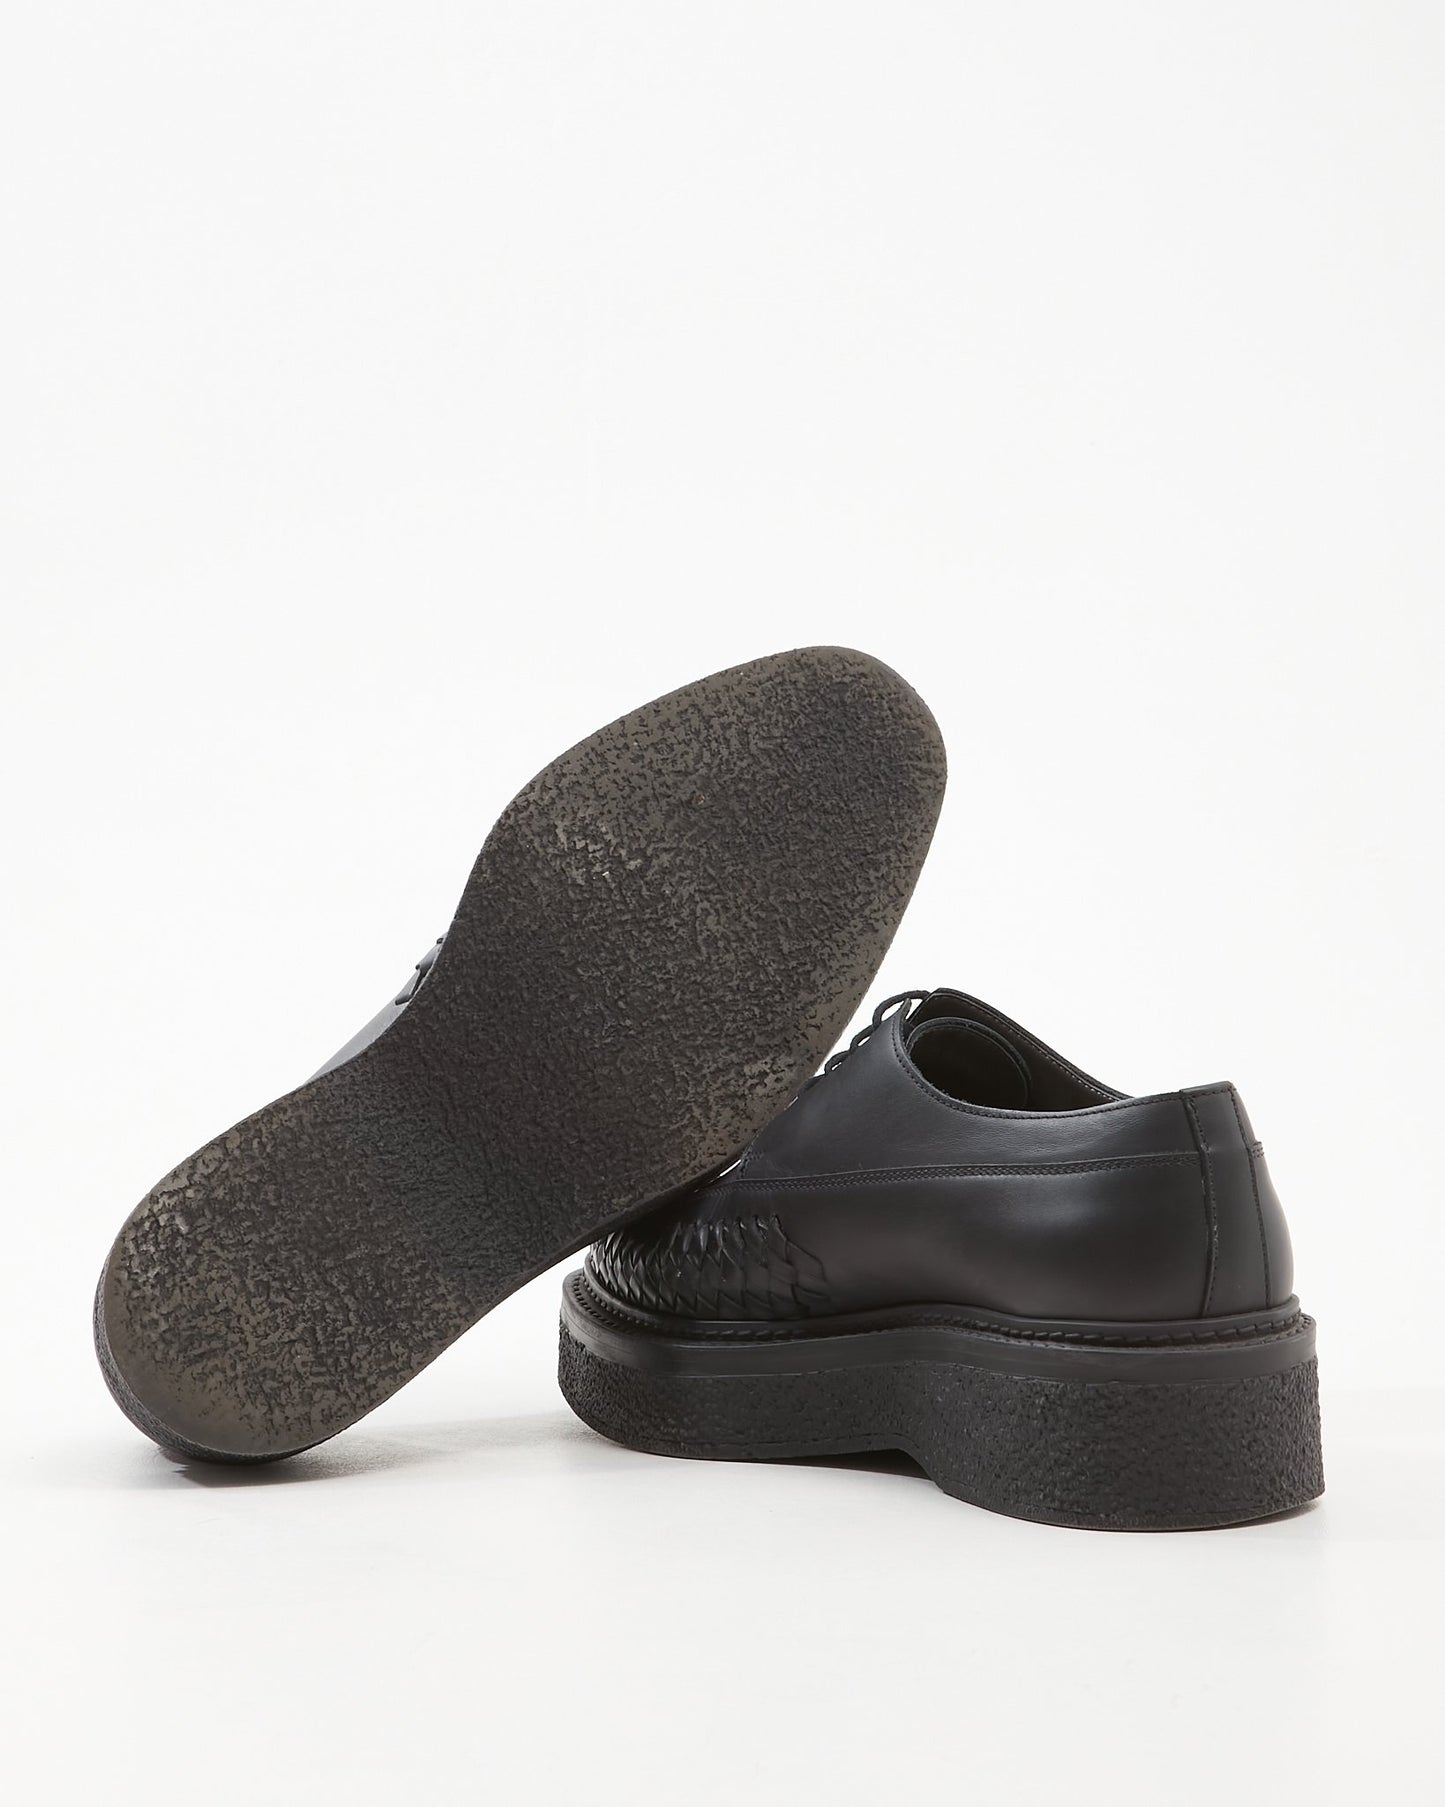 Lanvin MEN'S Black Leather Platform Brogue Men’s Shoes - 8